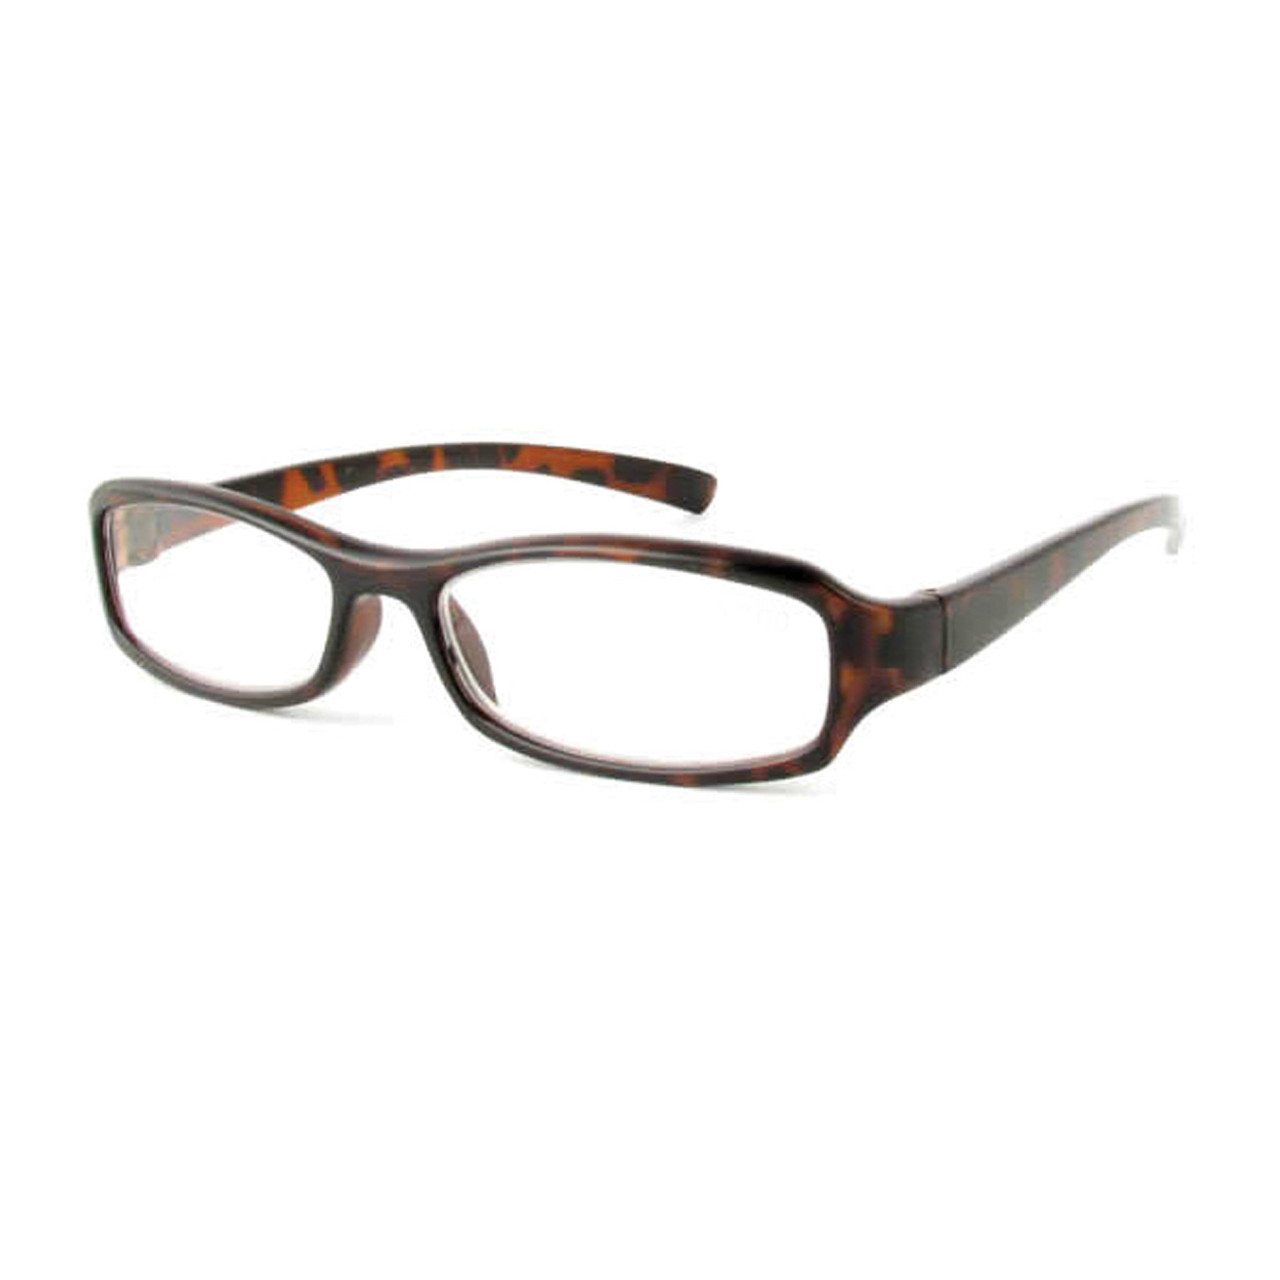 `+6.00 Deluxe Reading Glasses W/Tortoise Frame